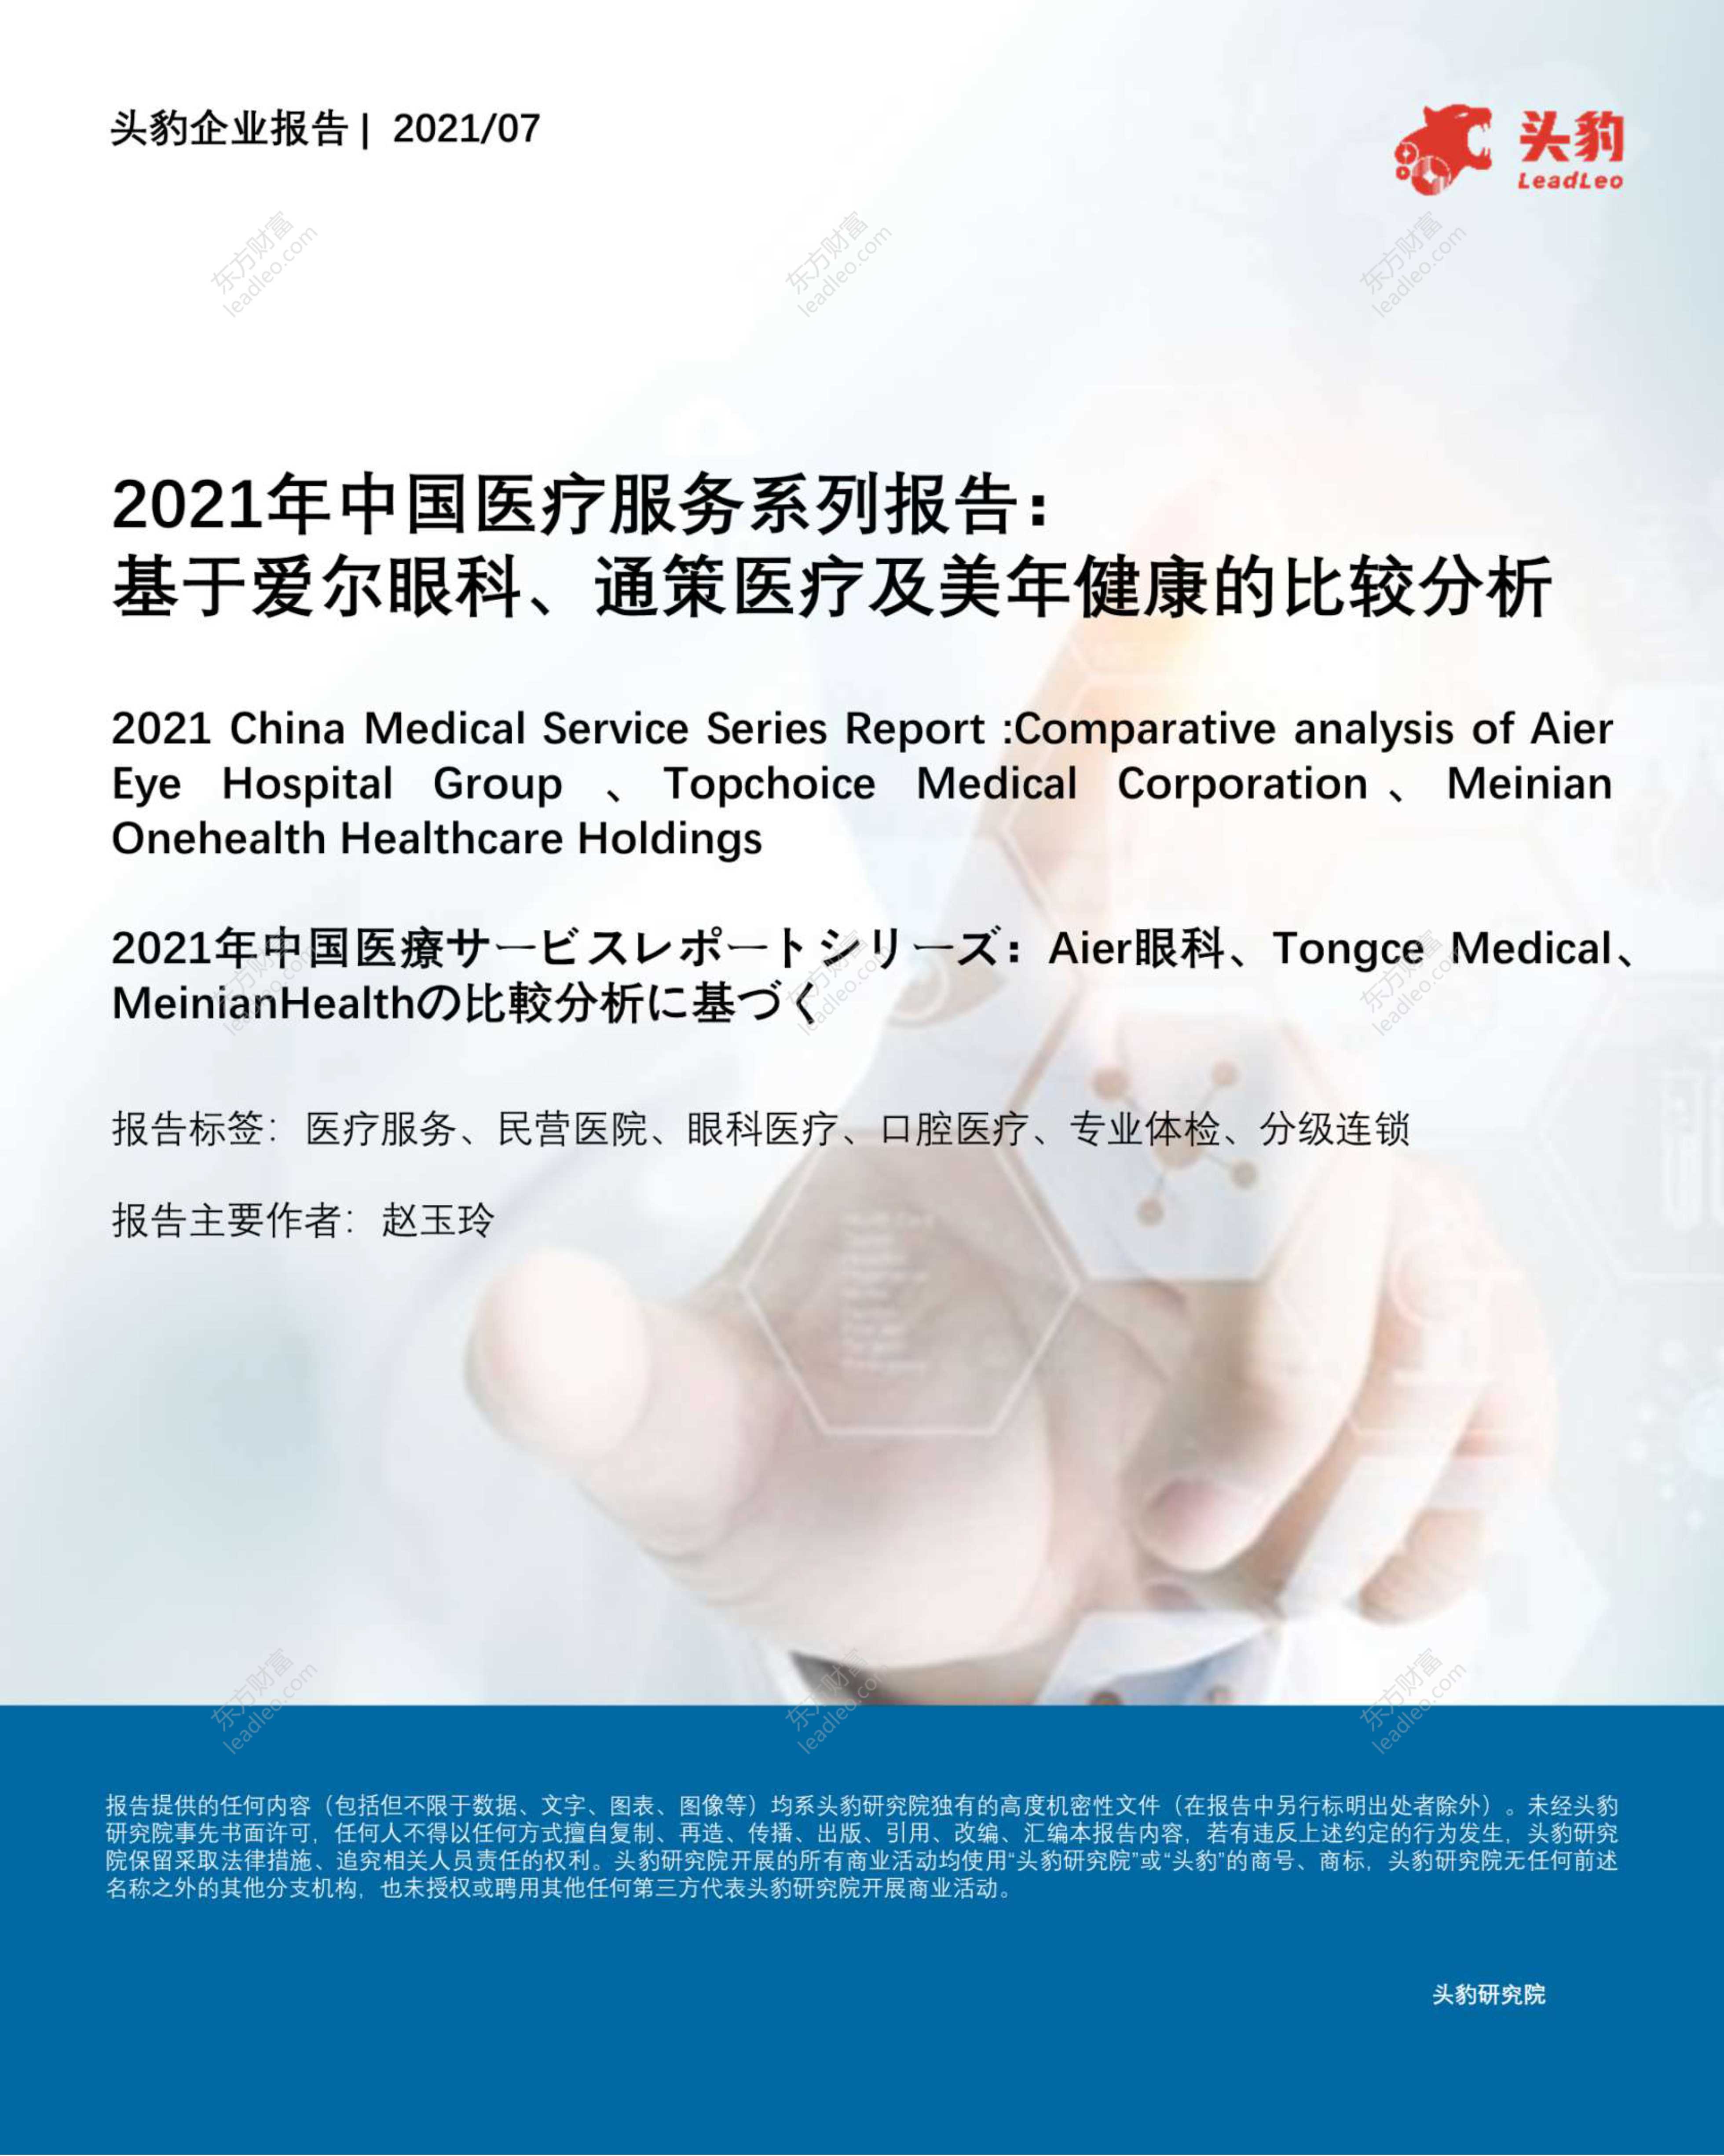 头豹研究院-2021年中国医疗服务系列报告：基于爱尔眼科、通策医疗及美年健康的比较分析-2021.09-34页